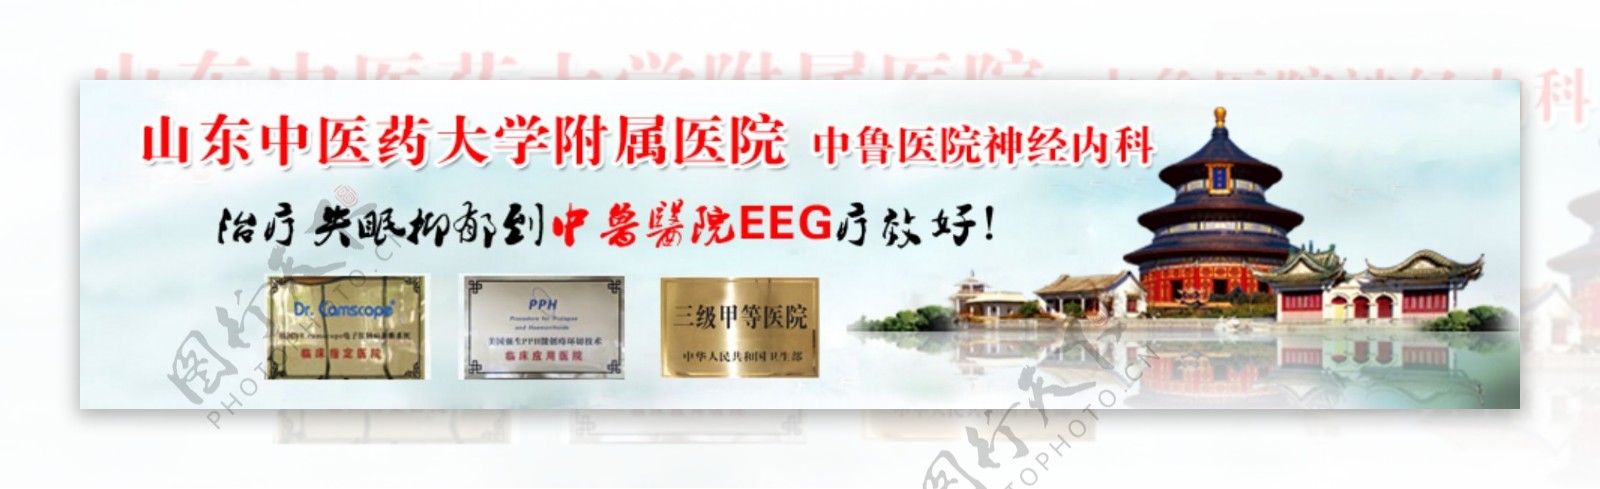 中医网站banner图片